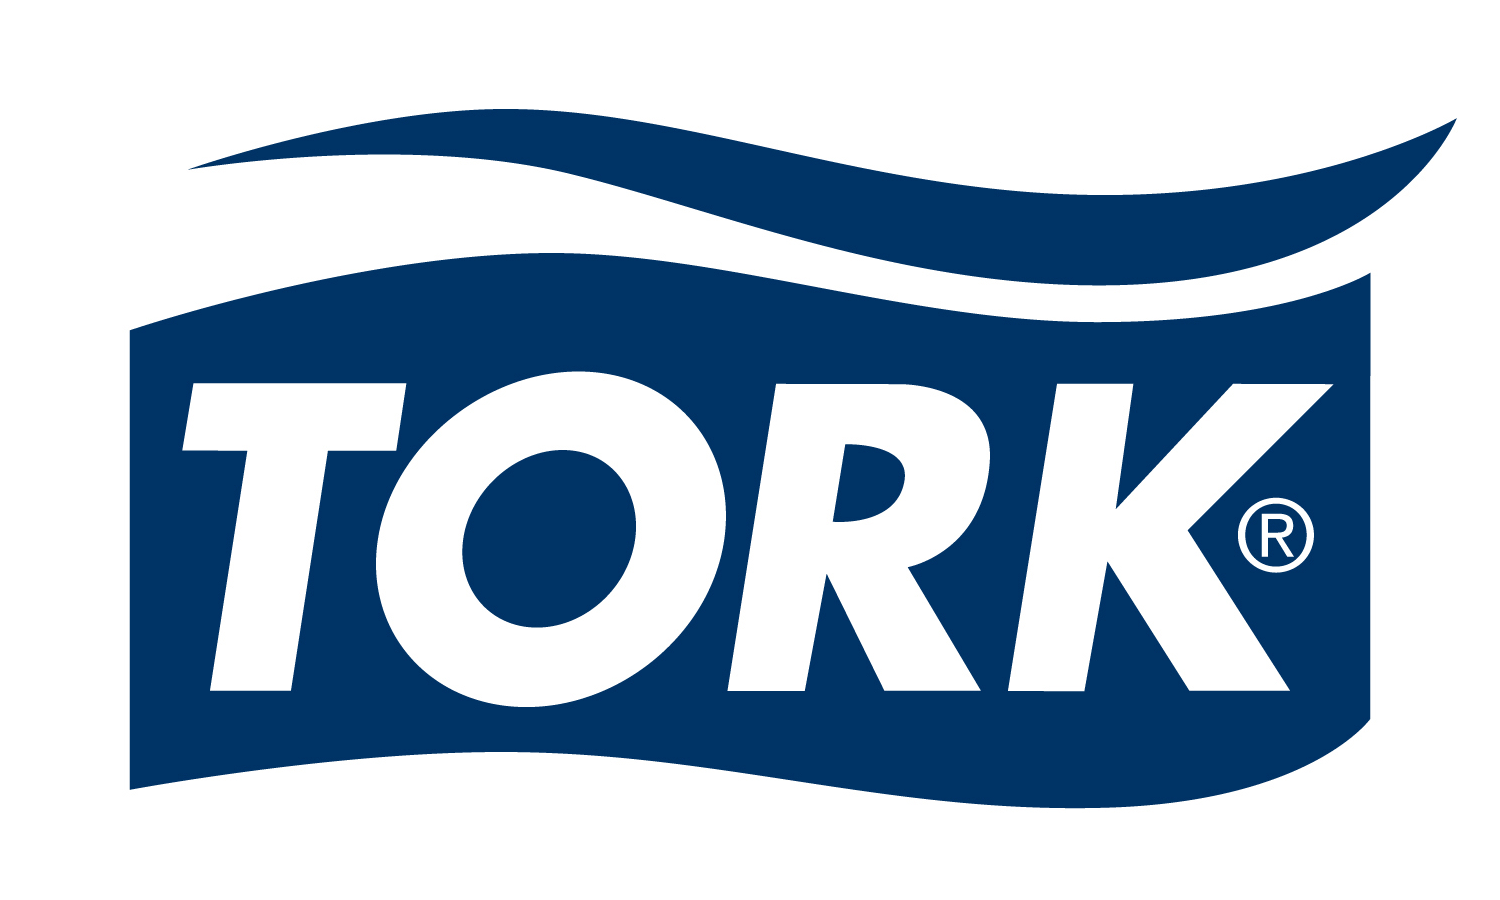 Tork – Logos Download